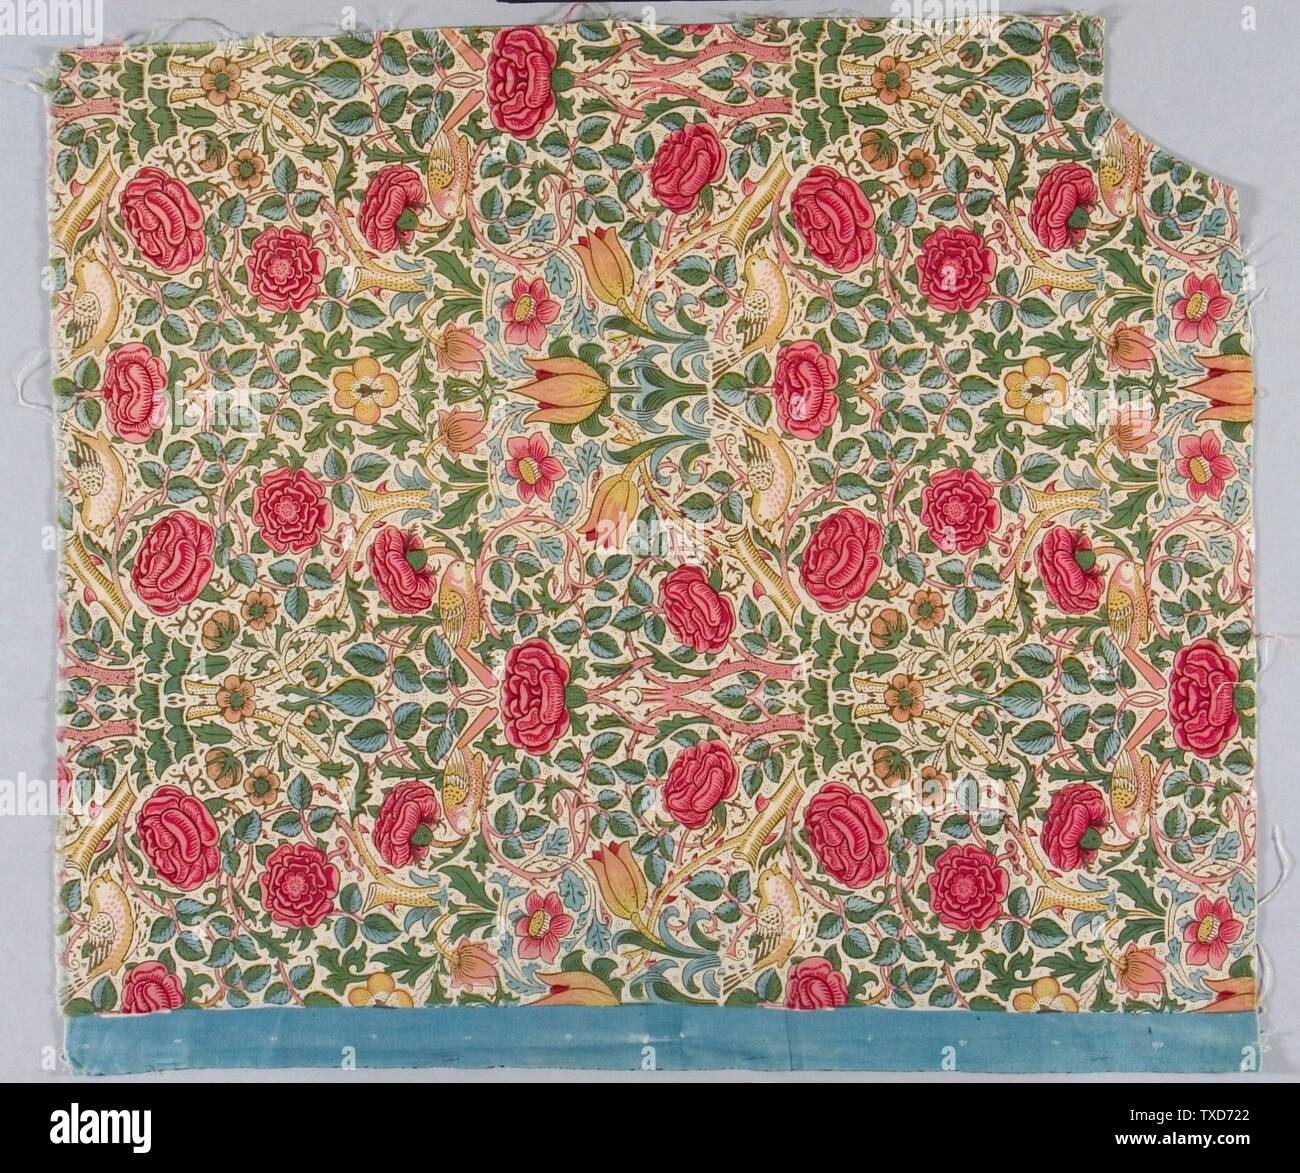 Tessile, 'Rose'; Inghilterra, progettato 1883 tessili; lunghezze tessili stampati in Bk, cotone a scarico indaco 34 3/4 x 30 1/2 in. (88,27 x 77,47 cm) Gift of Catherine Kurland, in memoria di Sam e Kathleen Kurland (M.183.159.1) Costume e tessile; Progettato nel 1883; Foto Stock